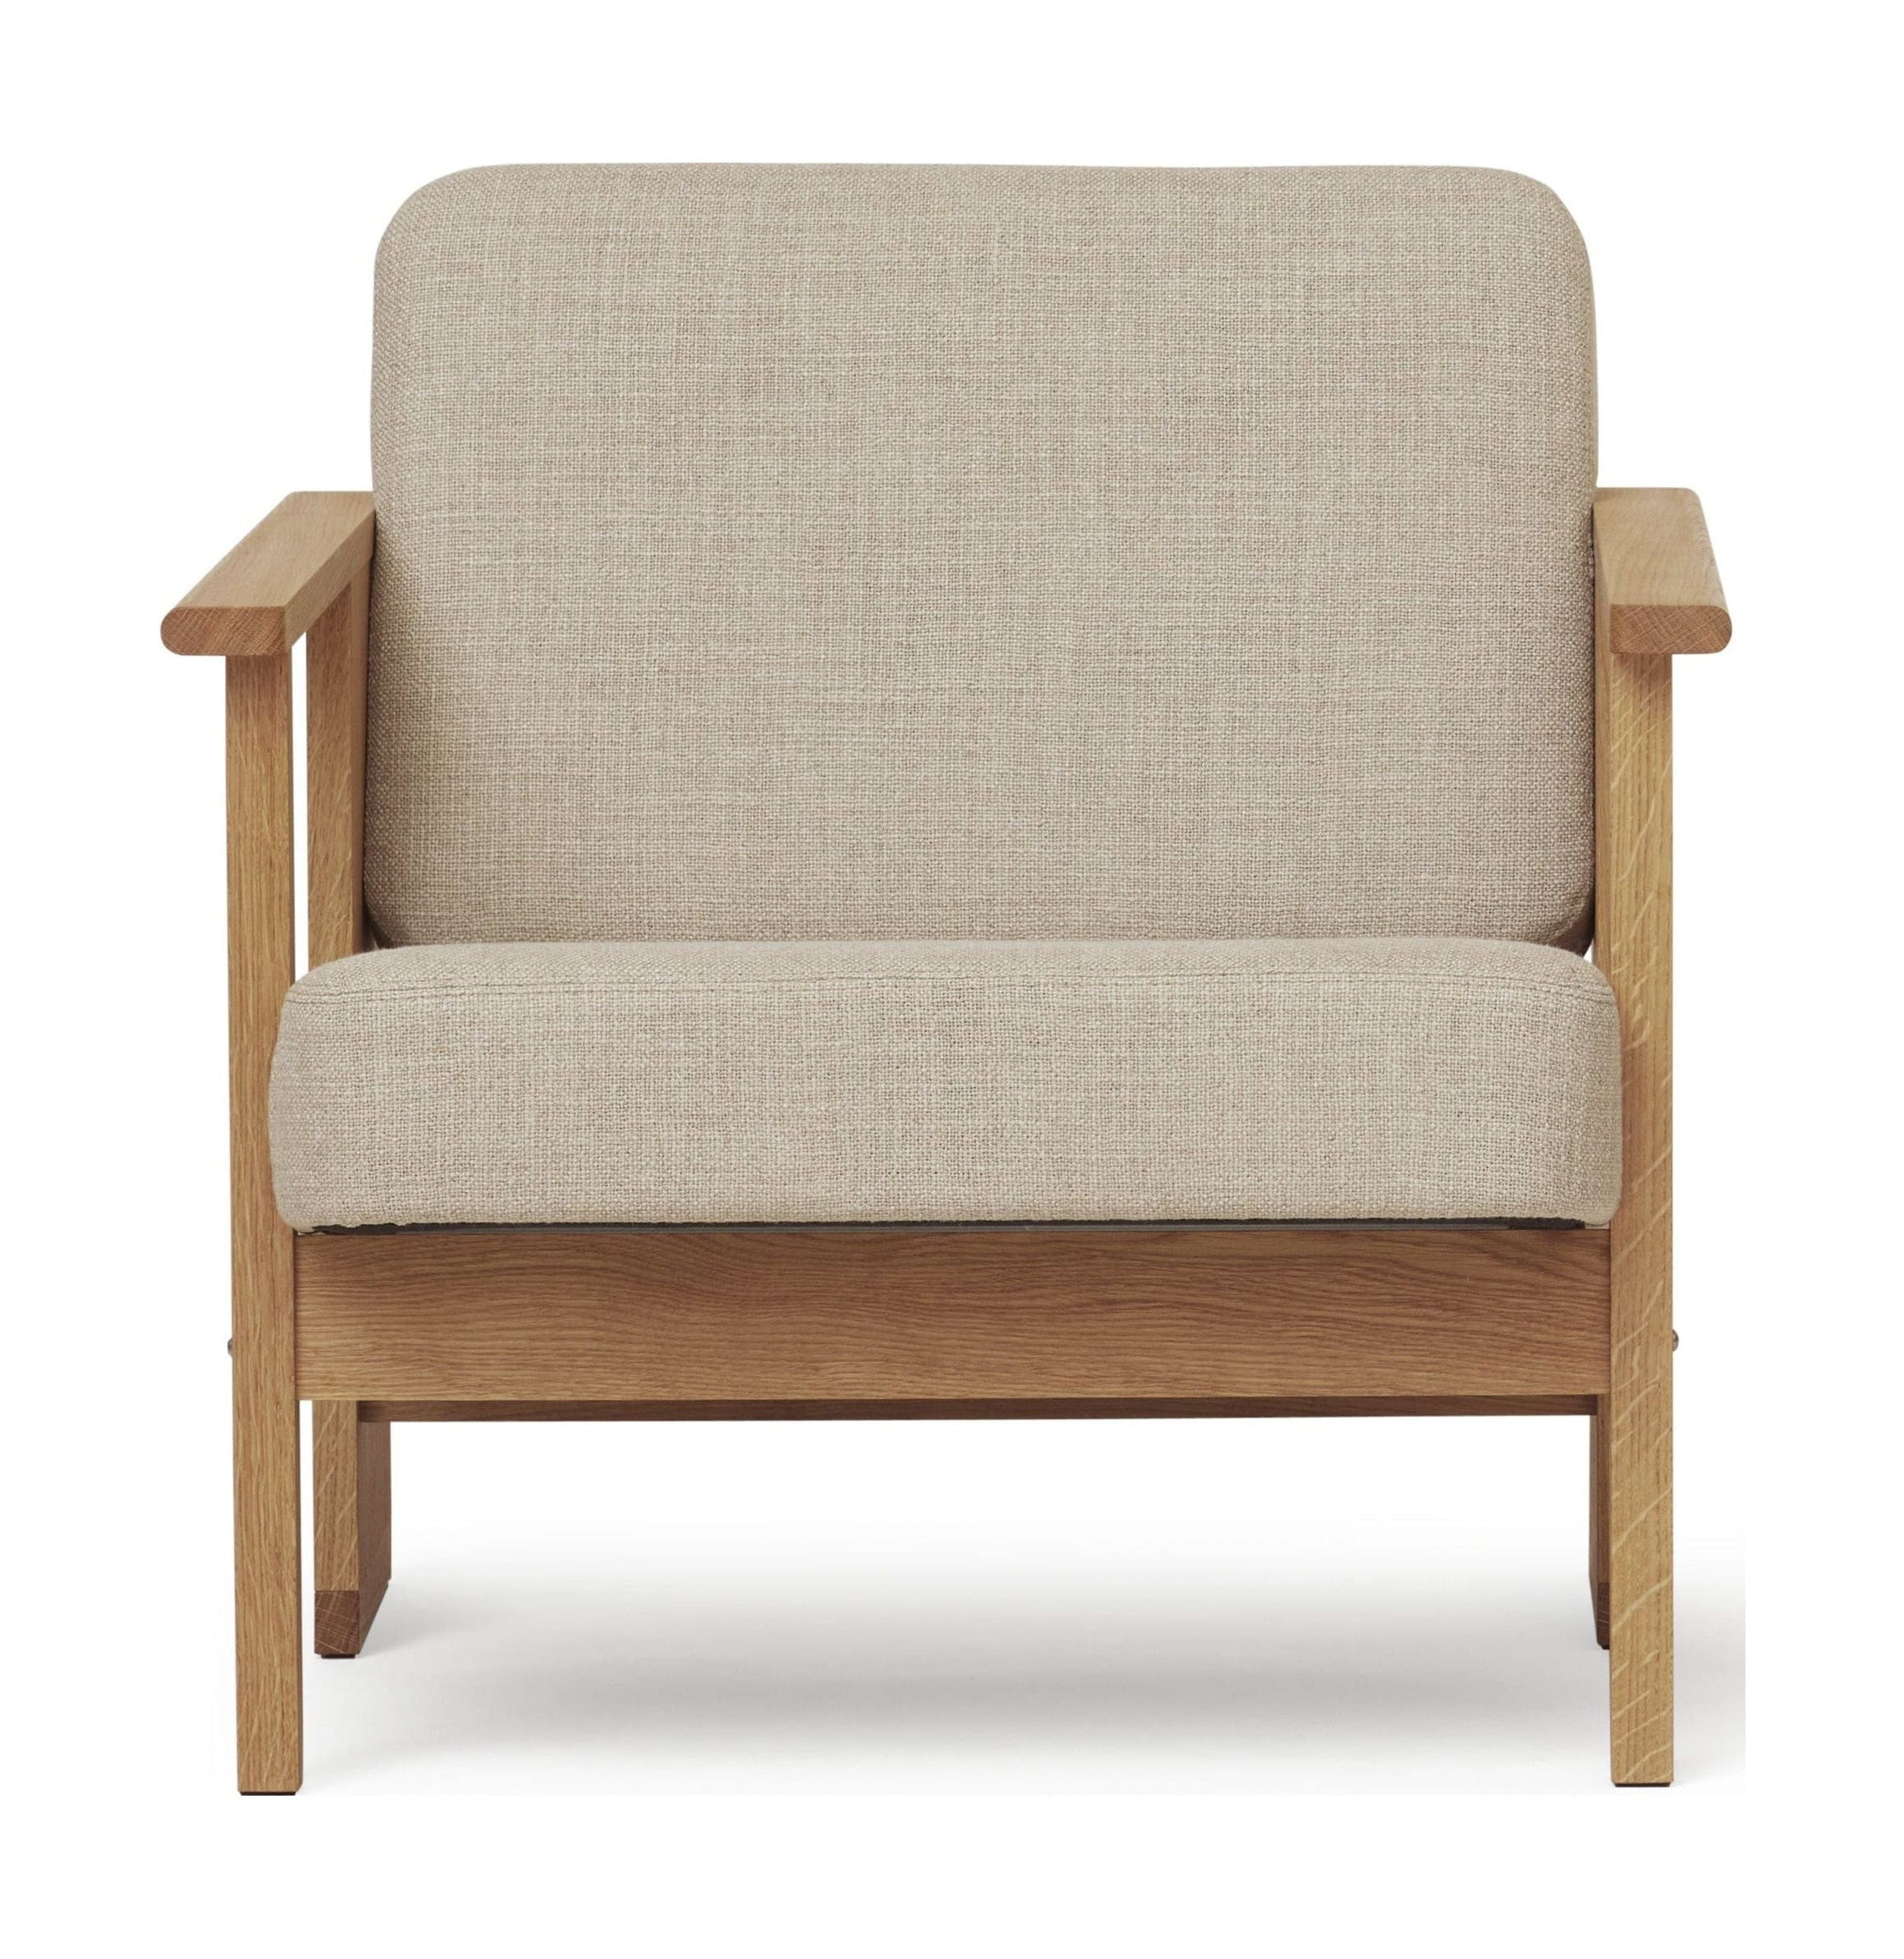 形式和精炼式休息室椅。橡木